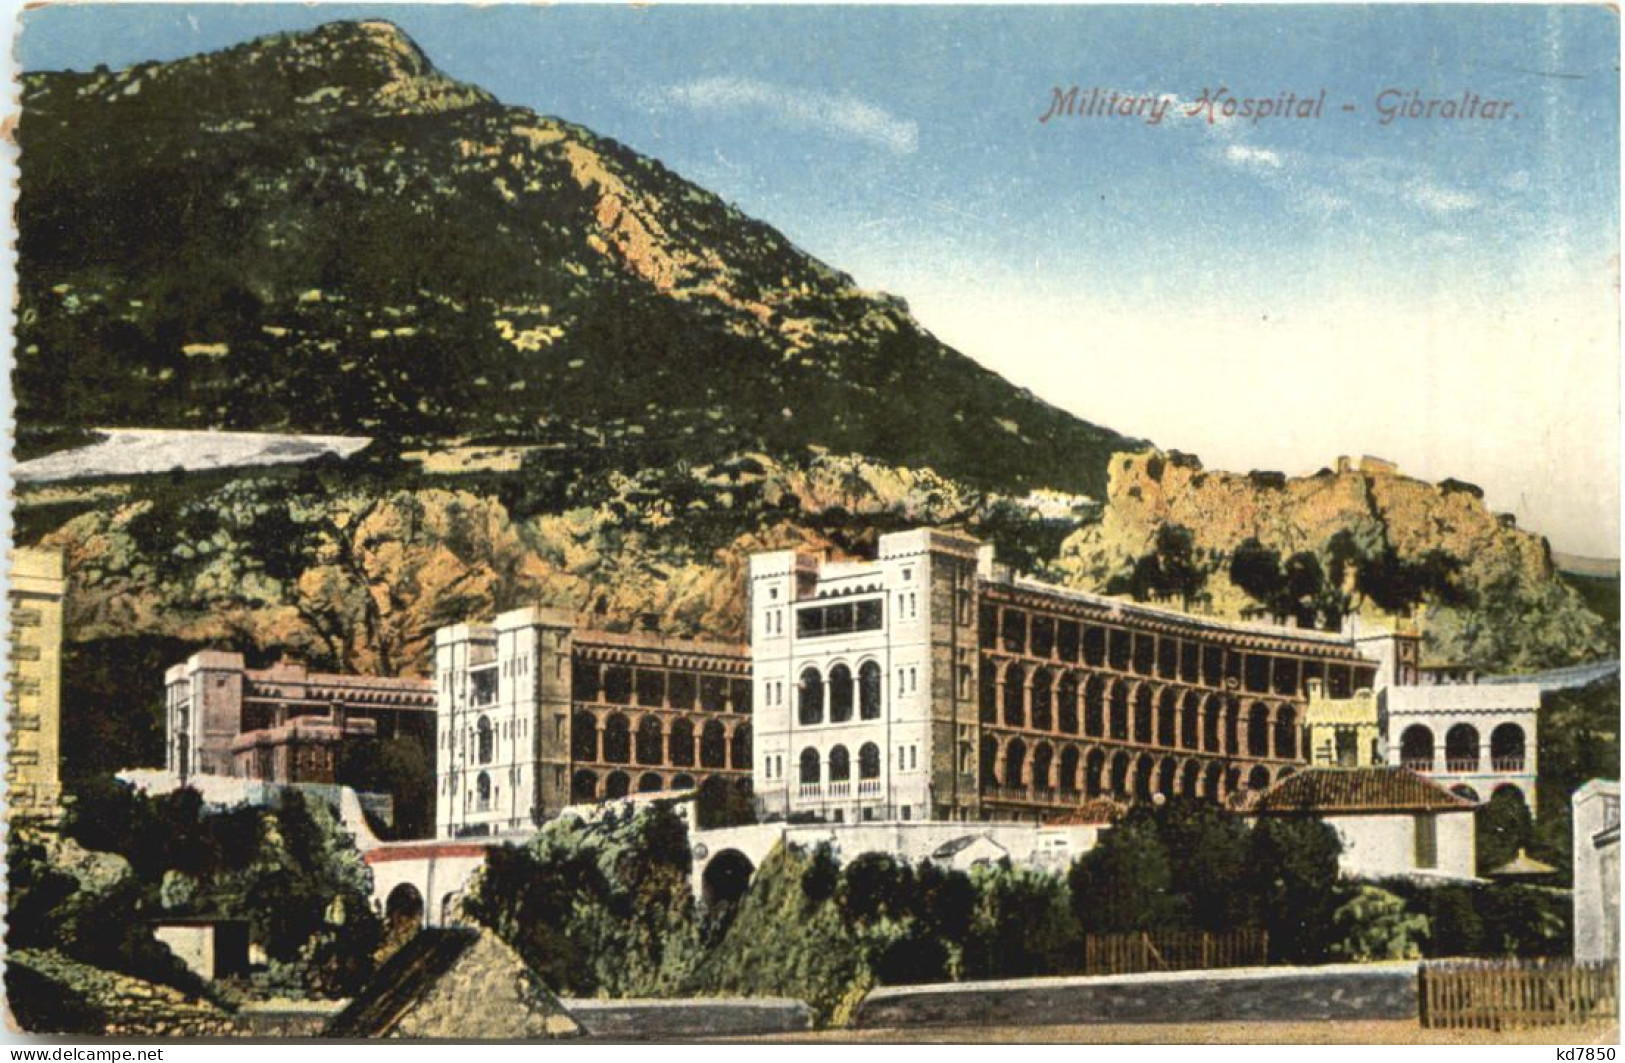 Gibraltar - Military Hospital - Gibraltar